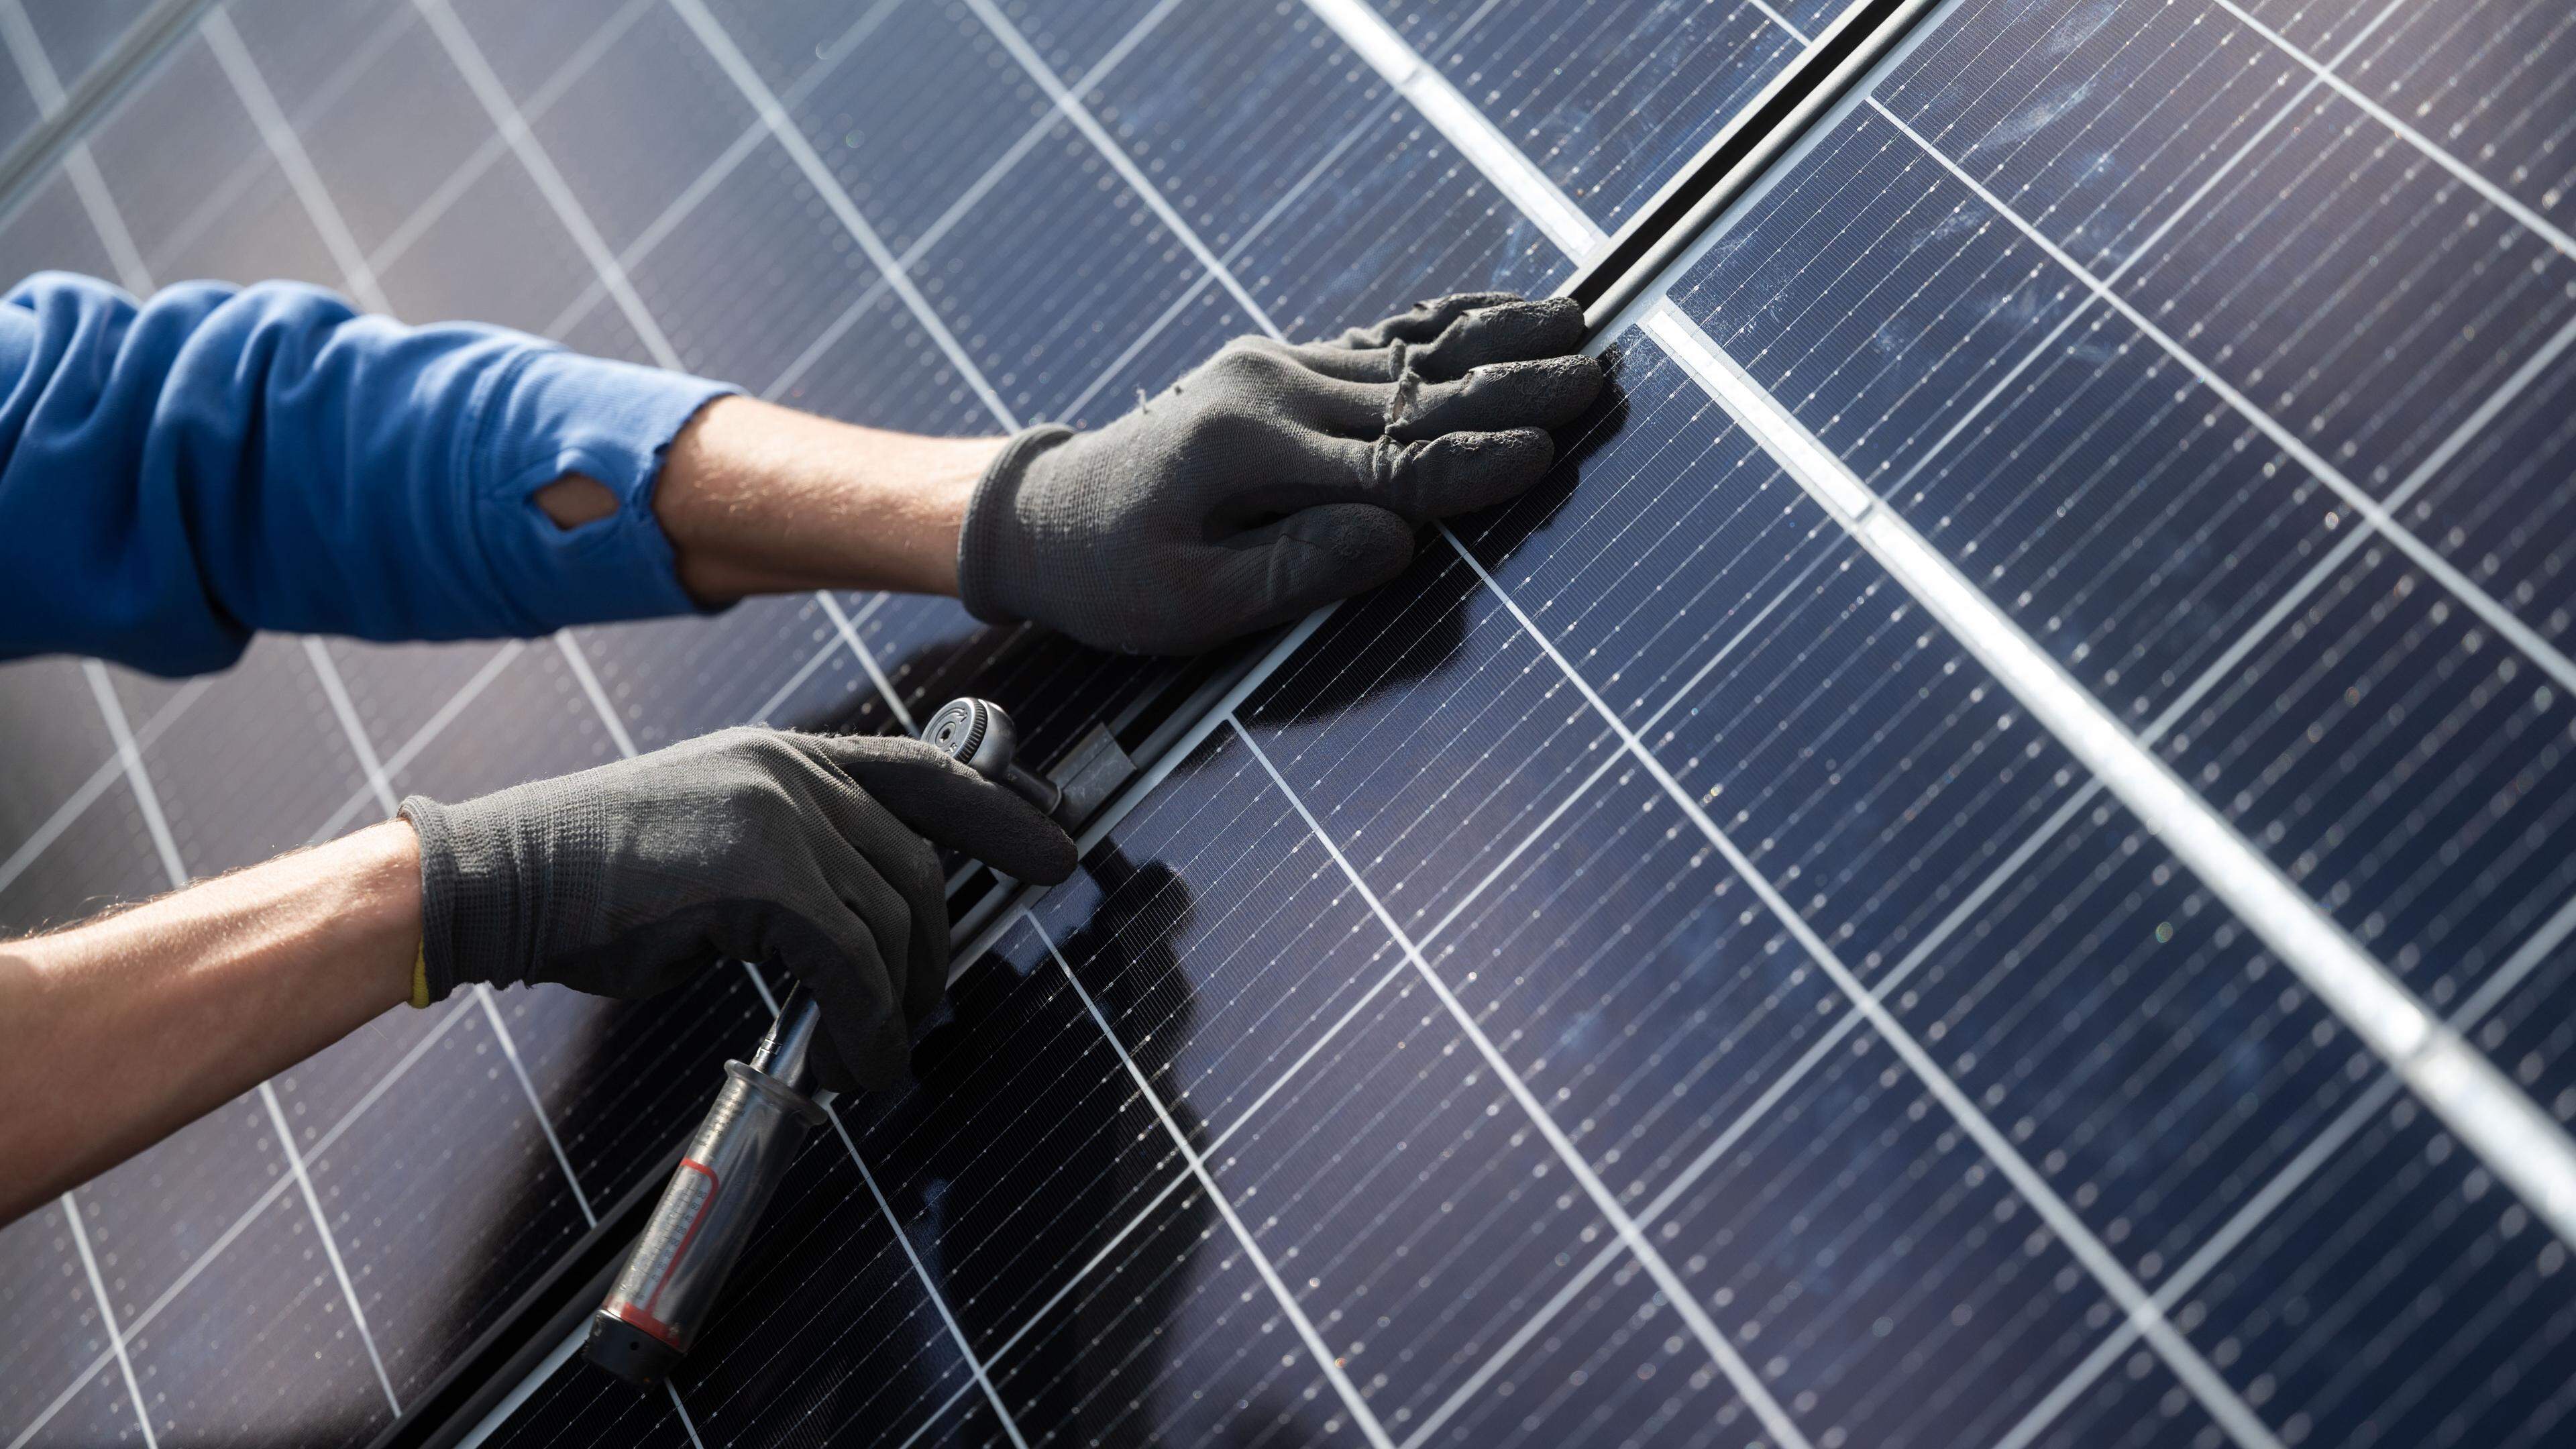 Mitarbeiter der Firma Sontec GmbH montieren Photovoltaikmodule auf dem Dach eines Wohnhauses. Am 14. Oktober findet der Solarbranchentag Baden-Württemberg statt. Es geht darum, wie der Südwesten den Photovoltaikausbau vorantreiben kann. Veranstalter sind die Branchenvereinigung Solar Cluster Baden-Württemberg und das Umweltministerium.